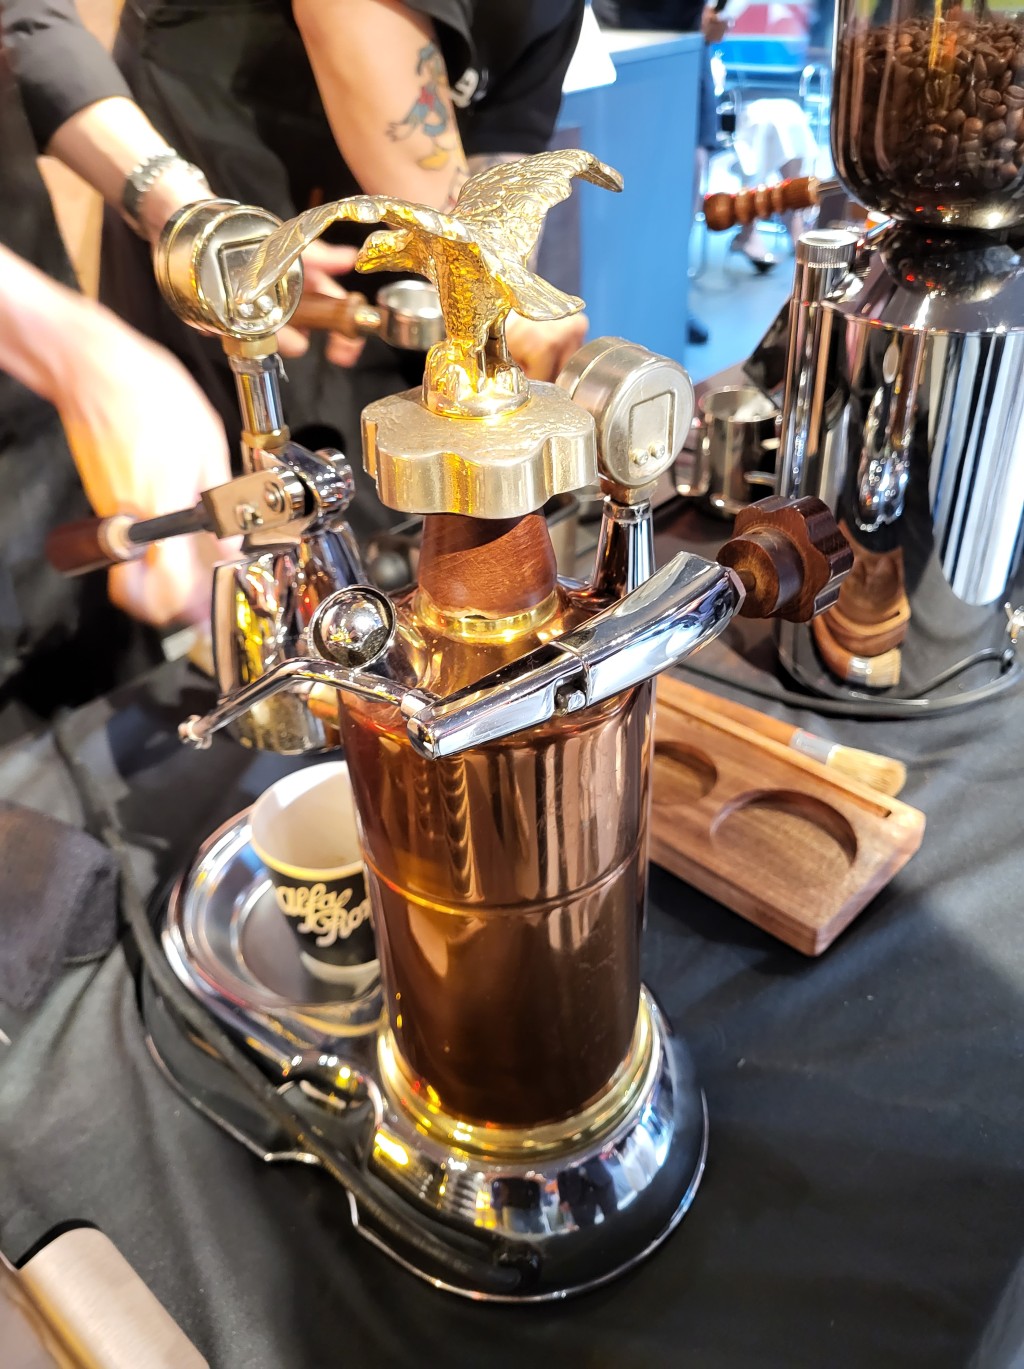 全新Tonale發布會現場提供意大利手工沖壓咖啡供客人享用。